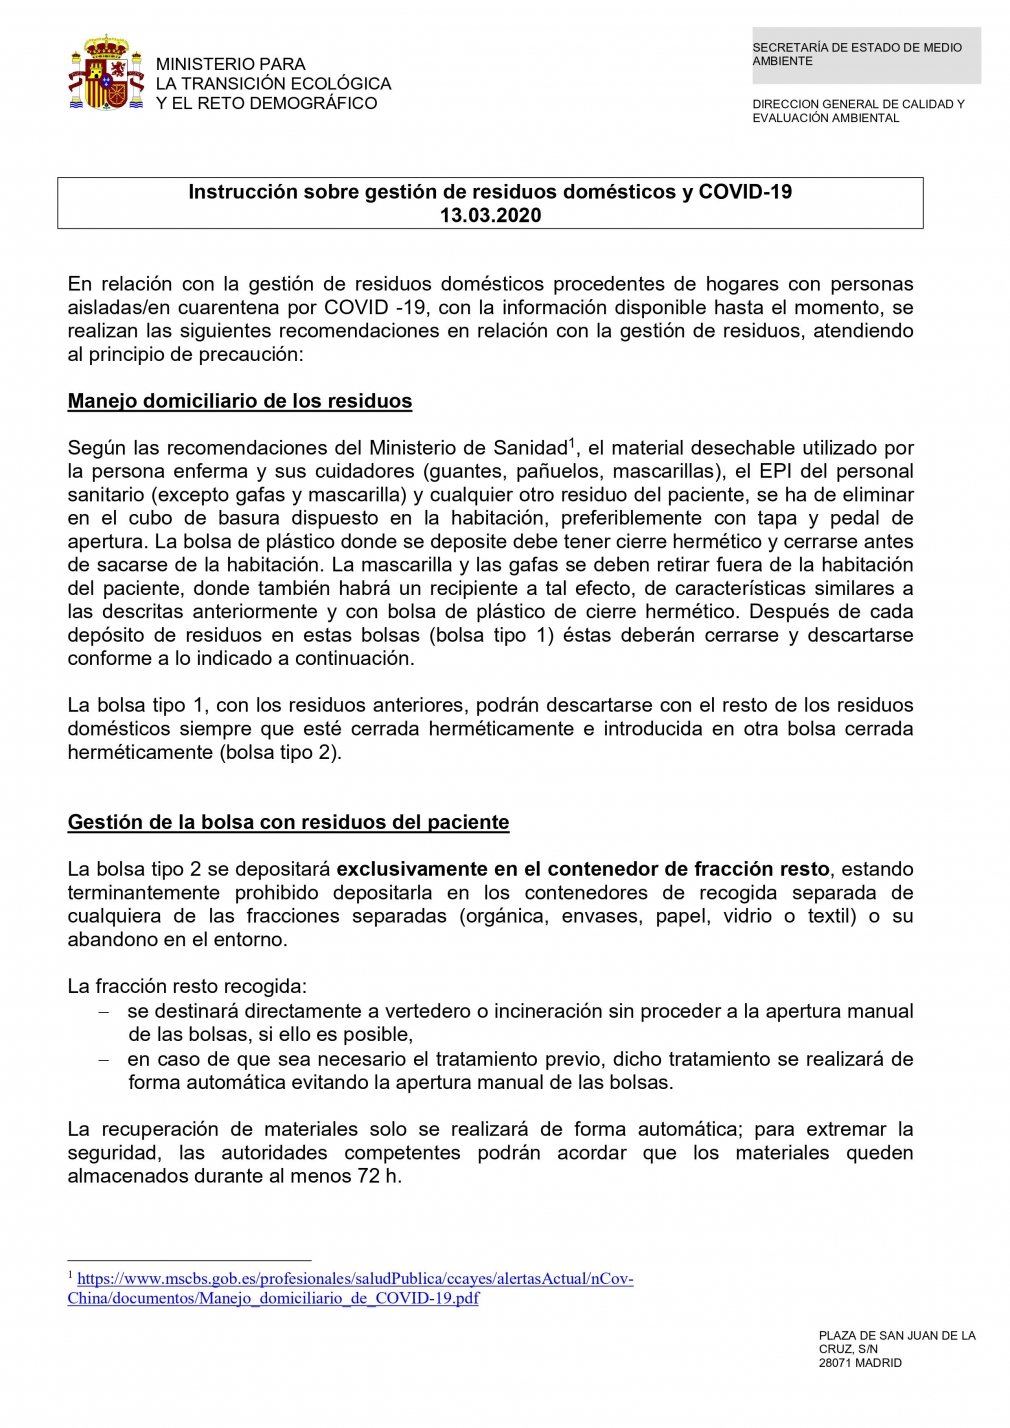 INSTRUCCIONES SOBRE GESTIÓN DE RESIDUOS DOMÉSTICOS COVID-19